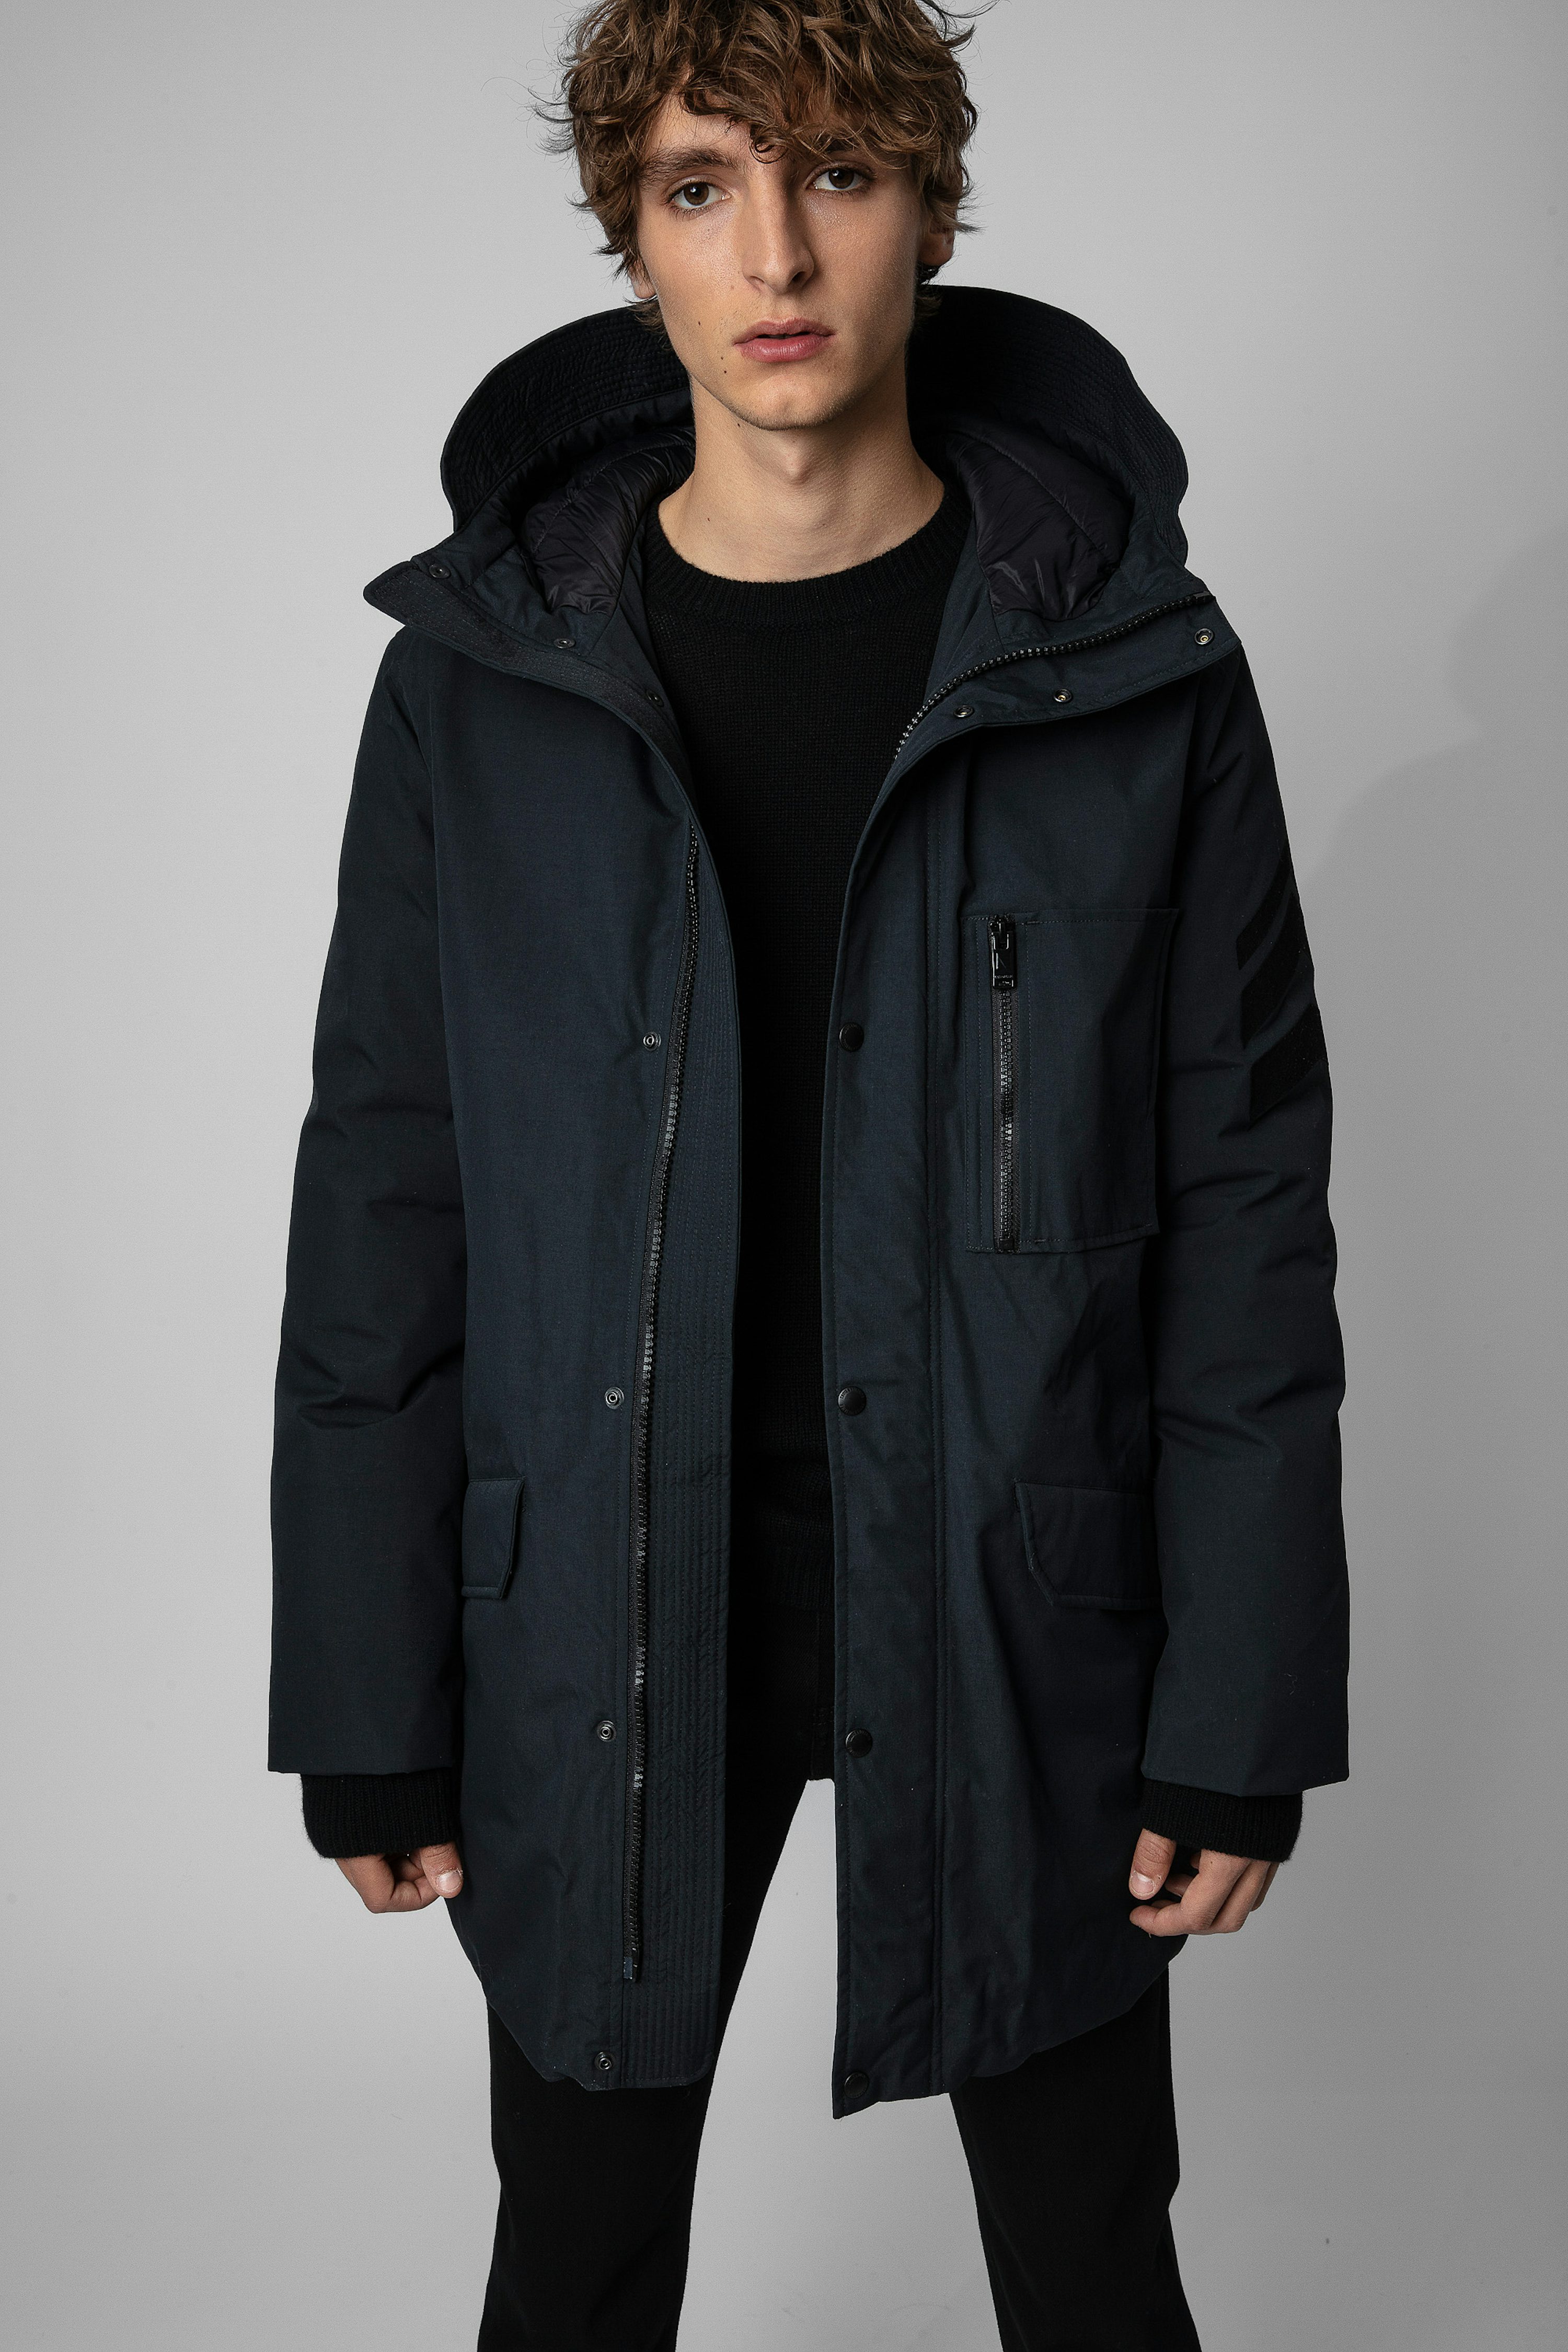 On-trend men’s coats, blazers, parkas, jackets | Zadig&Voltaire